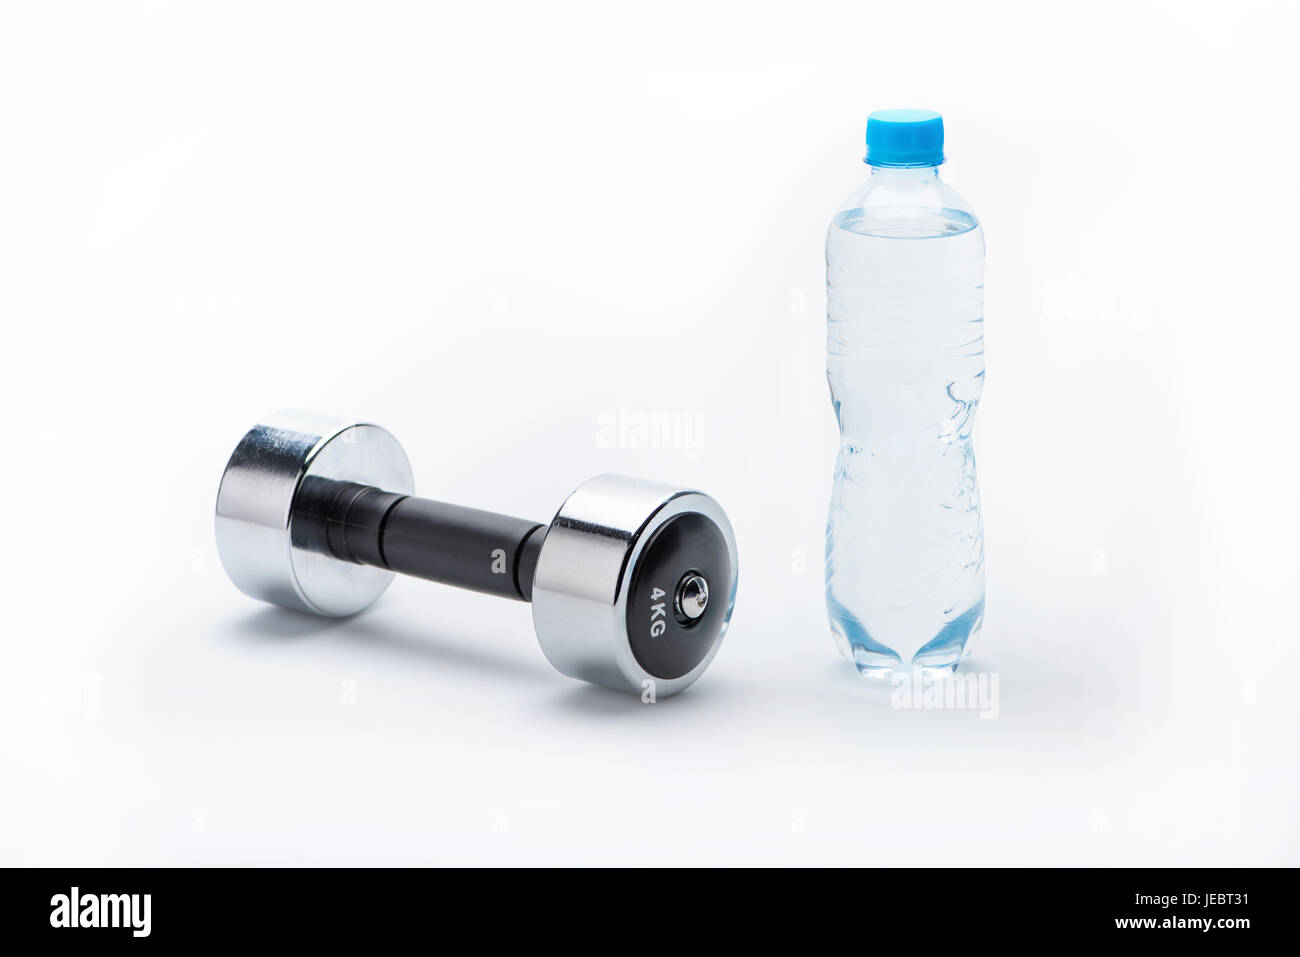 Manubrio metallico e una bottiglia con acqua isolato su bianco. Bere acqua, attrezzature sportive e uno stile di vita sano concetto Foto Stock